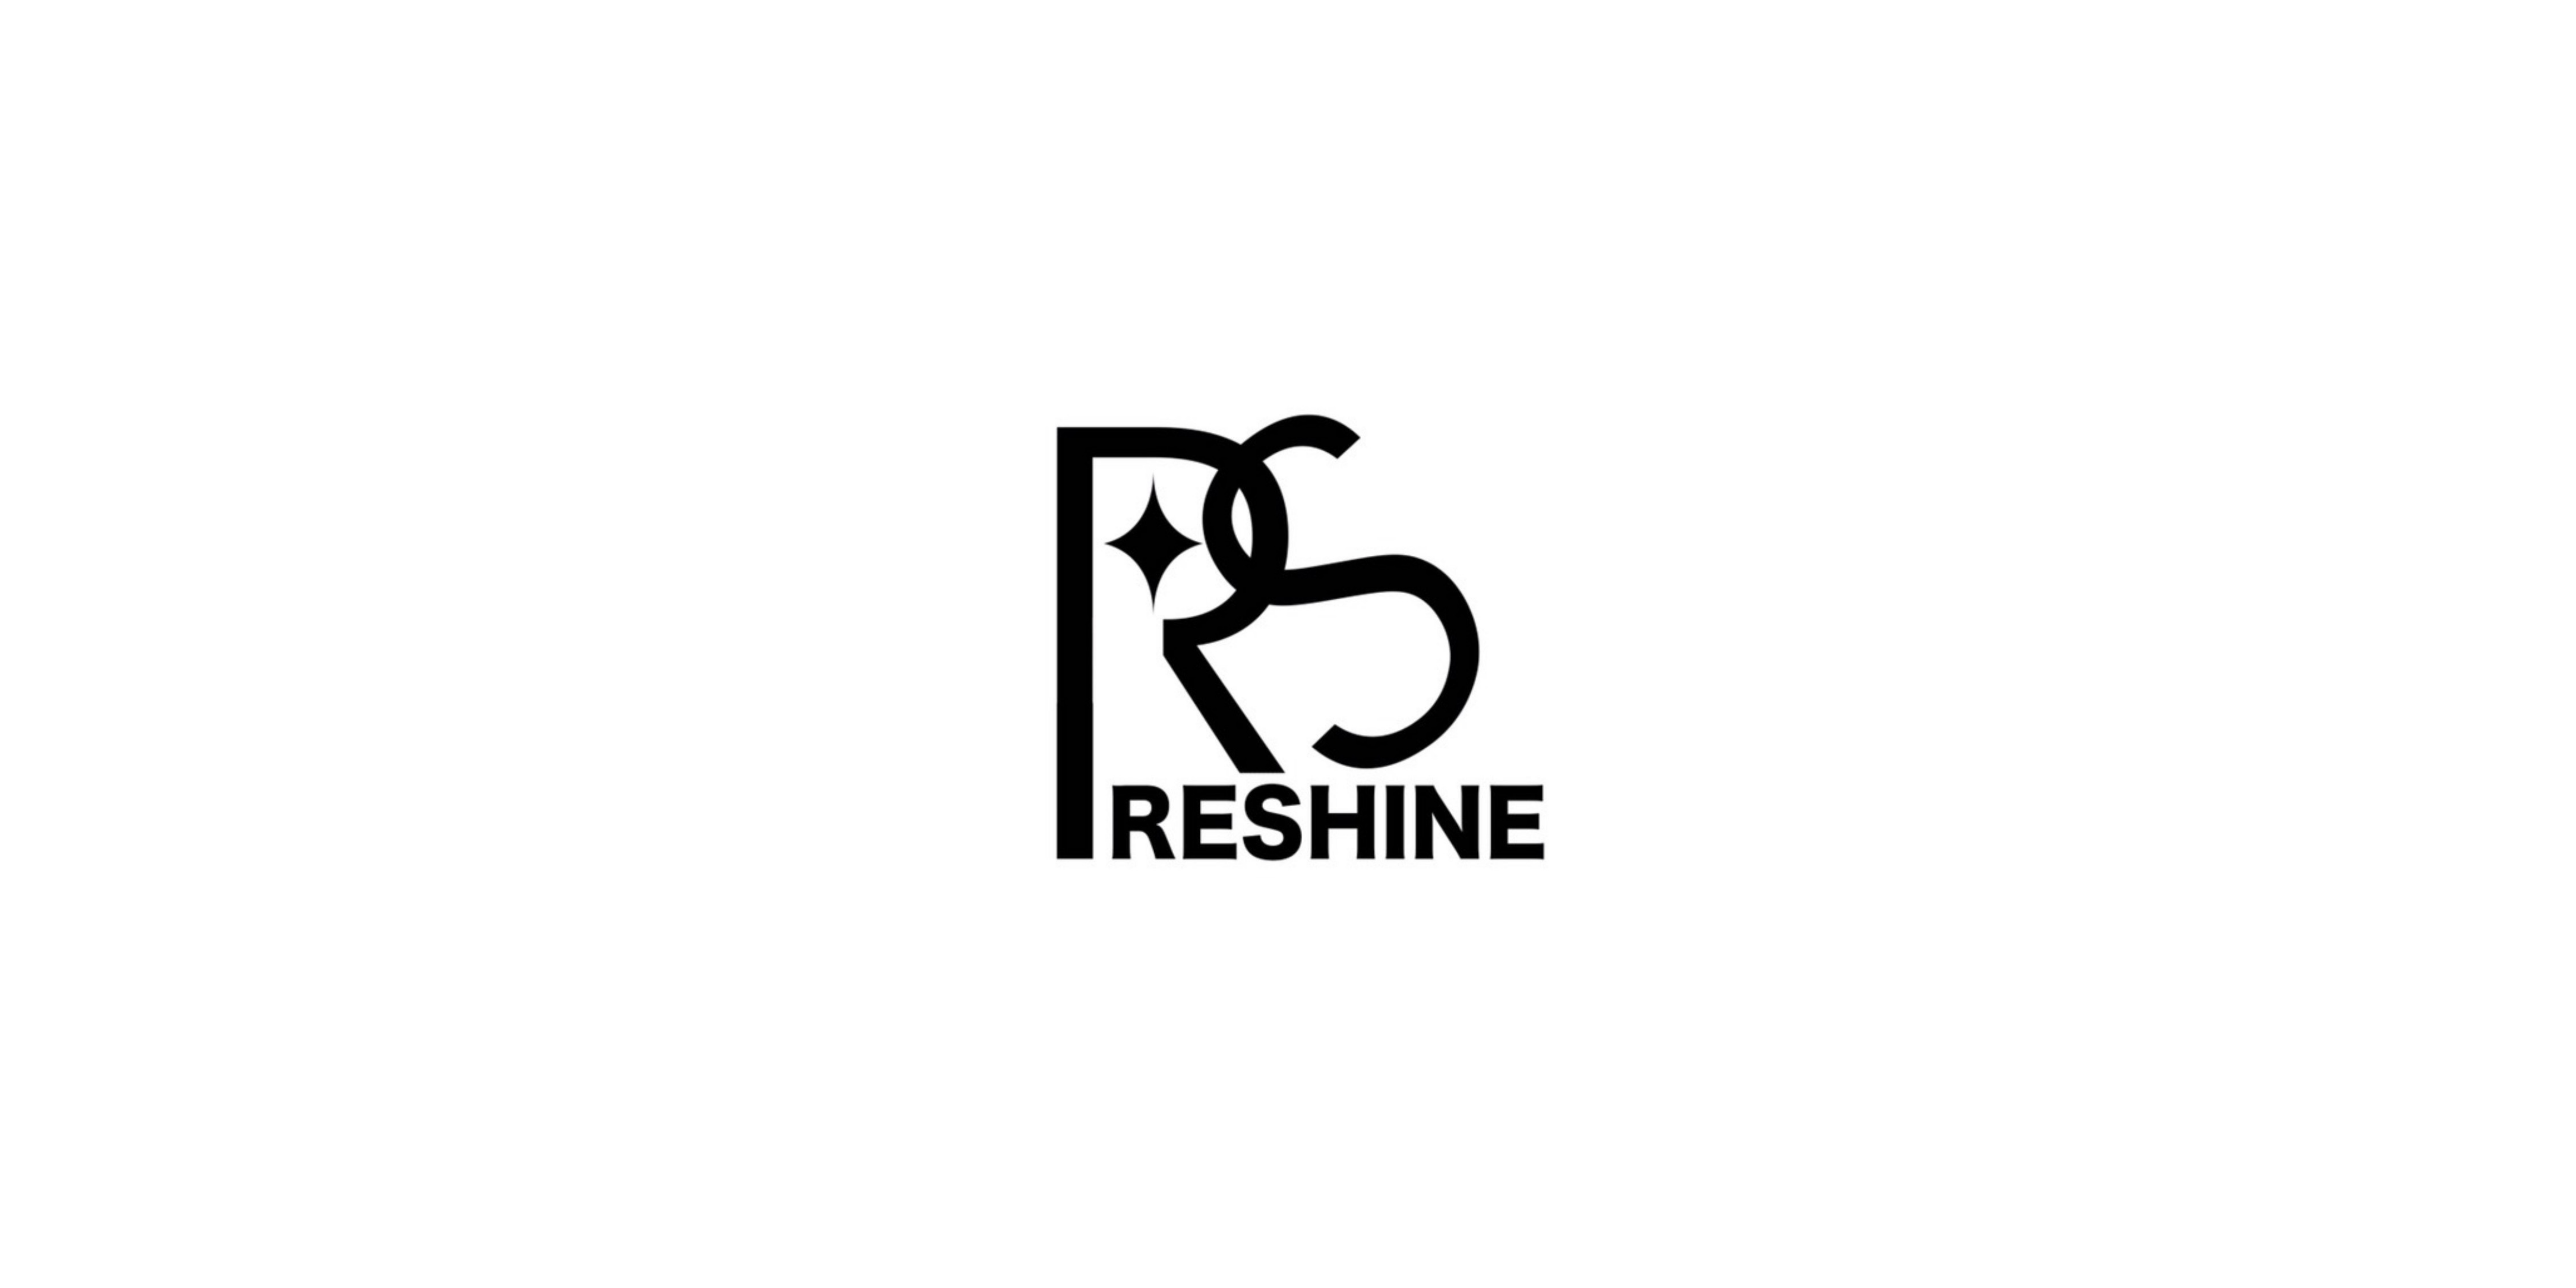 RESHINE Goods Store